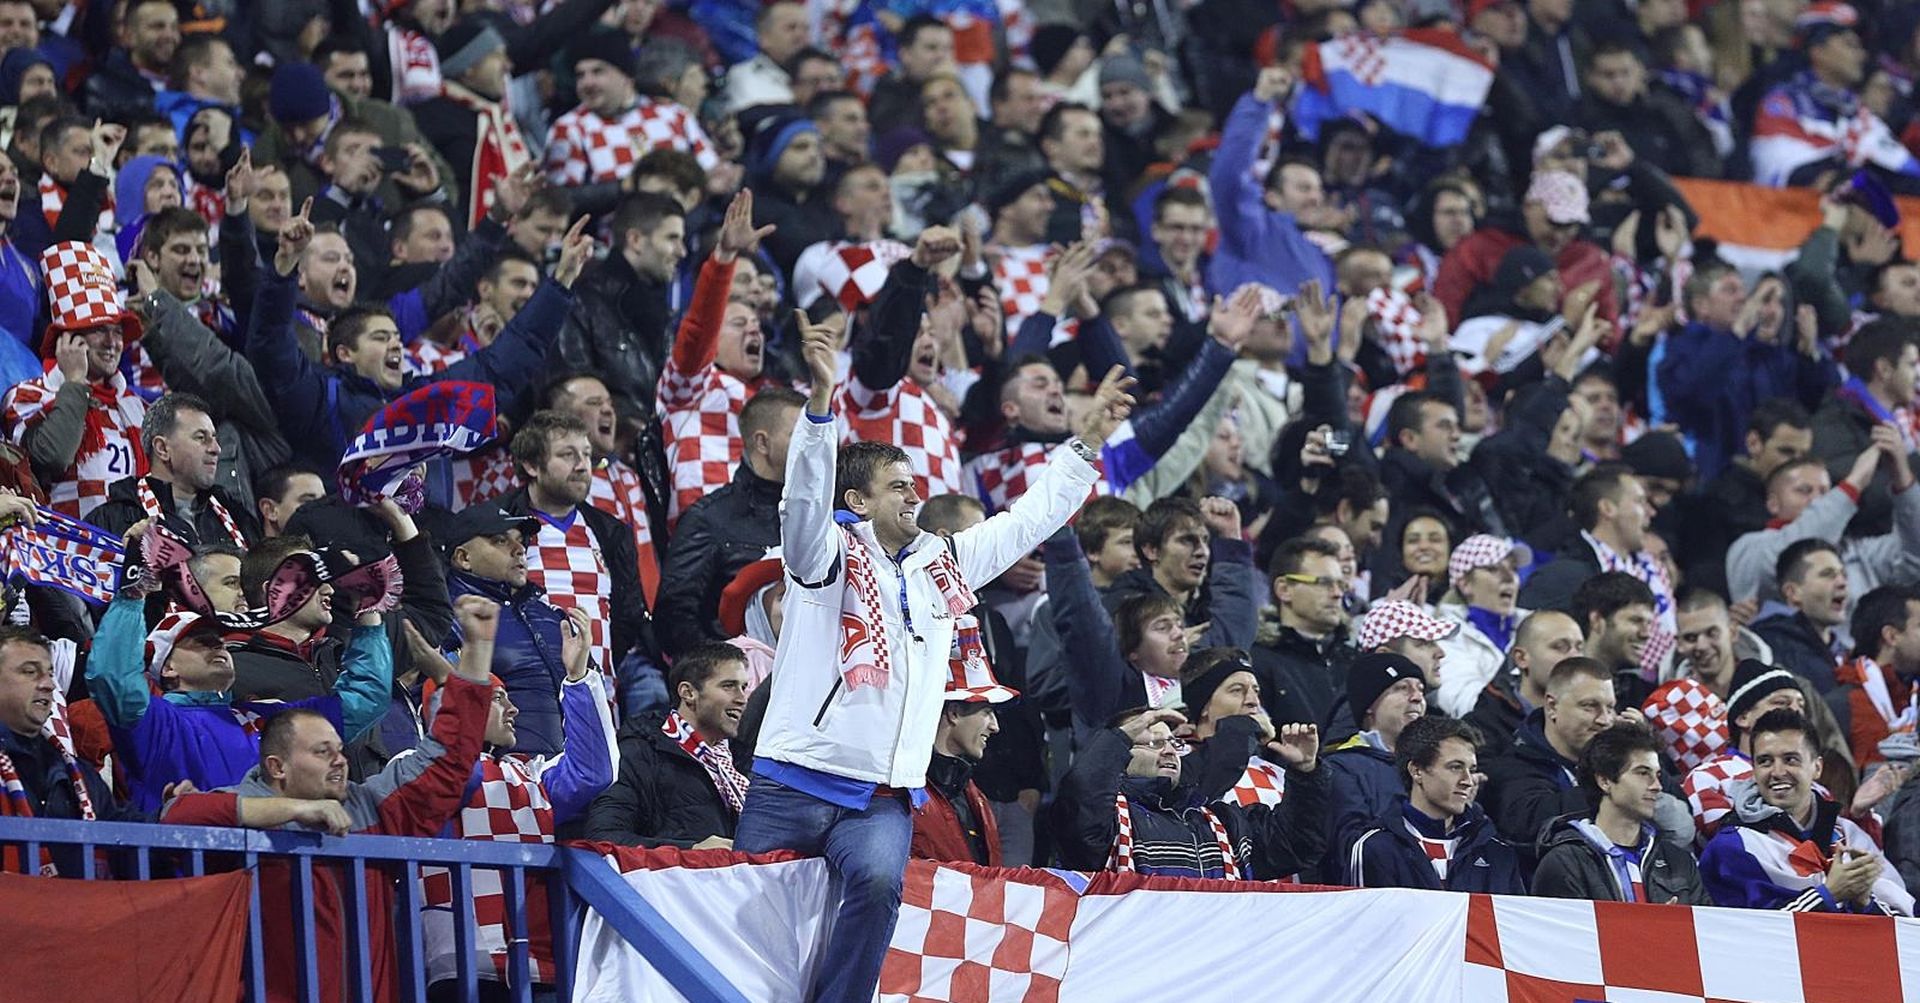 19.11.2013., stadion Maksimir, Zagreb - Dodatne kvalifikacije za SP 2014., Hrvatska - Island. Navijaci Hrvatske. 
Photo: Goran Stanzl/PIXSELL